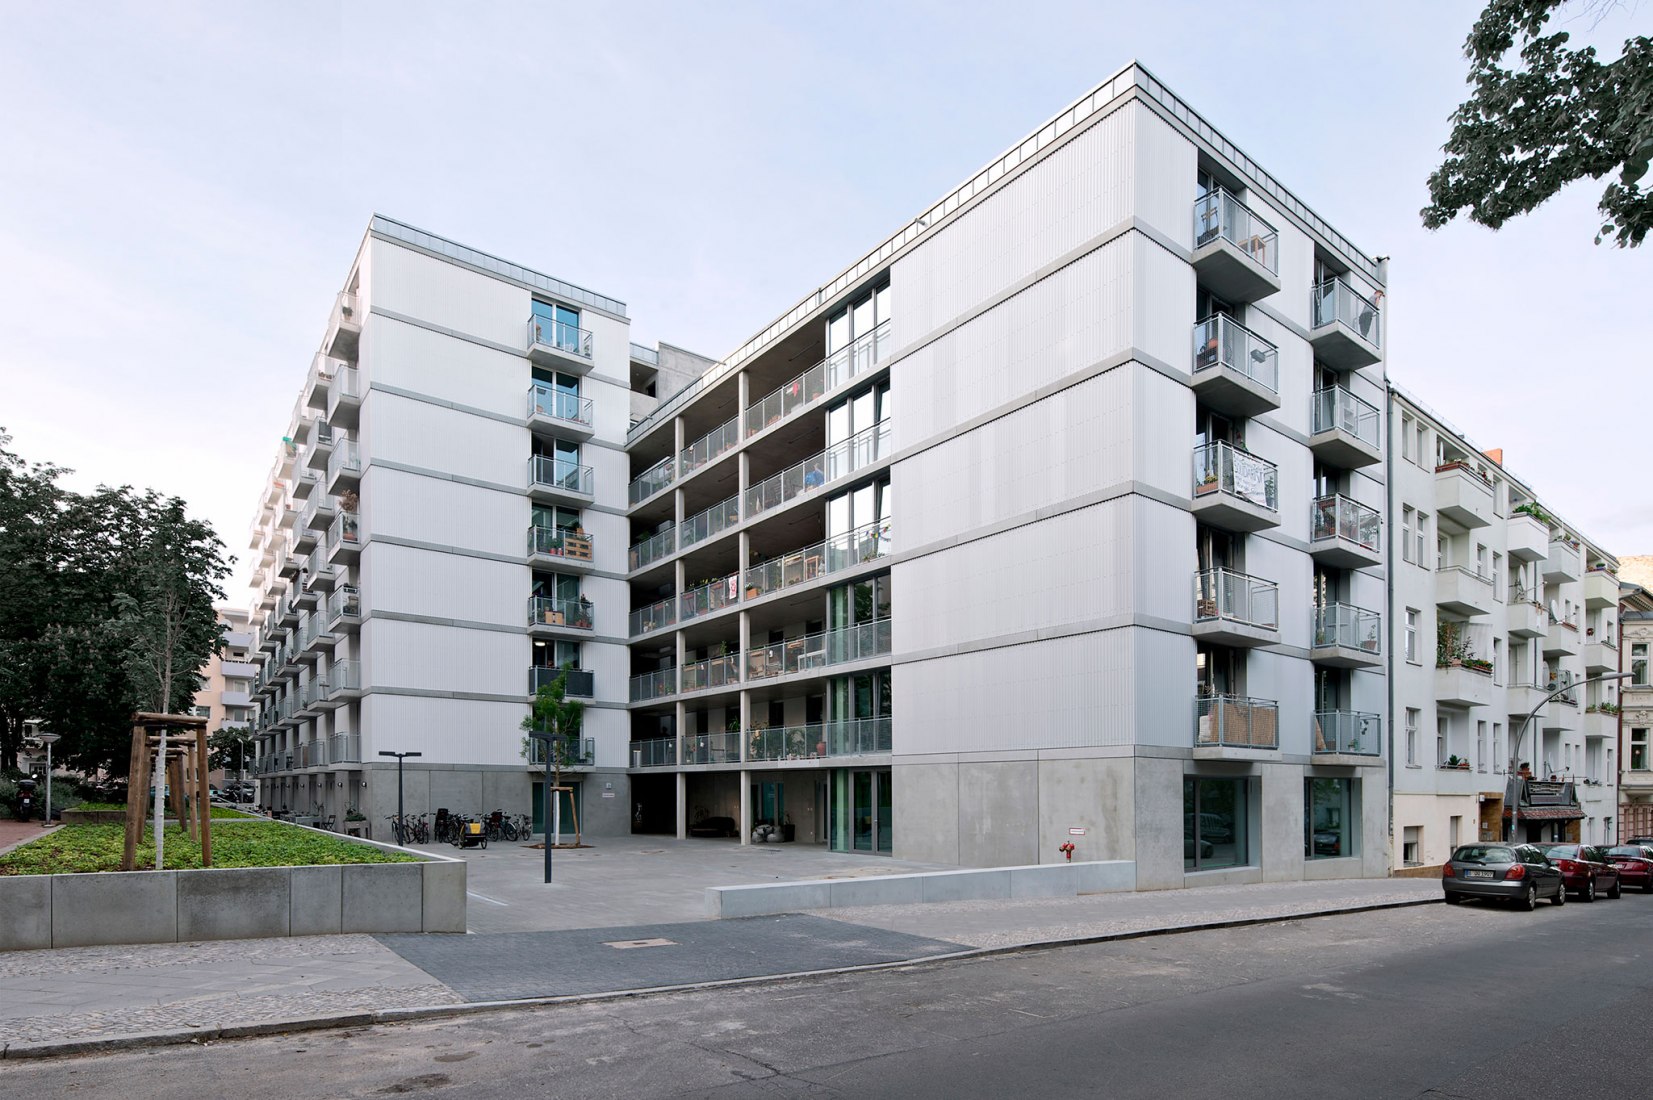 Nuevas viviendas en Briesestraße por EM2N. Fotografía por Andrew Alberts